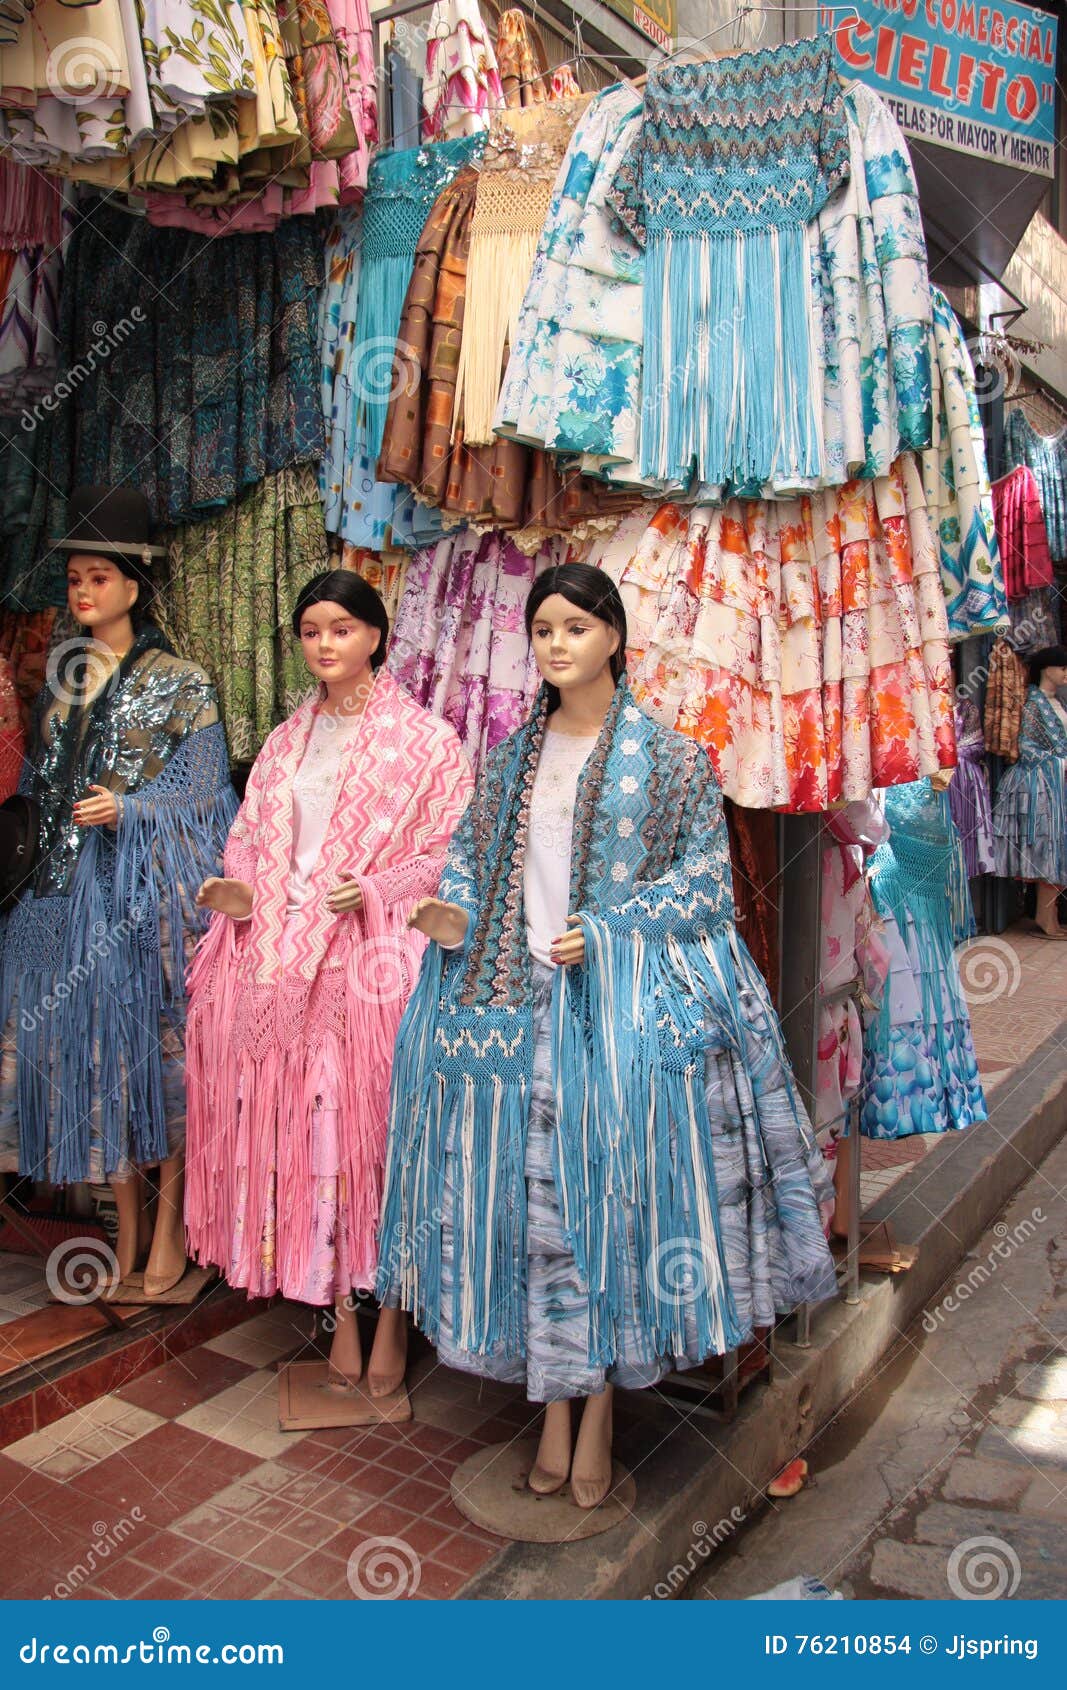 La Ropa Las Mujeres Bolivianas Tradicionales En Una Tienda De La Moda Imagen de archivo editorial - Imagen de azul, modelo: 76210854